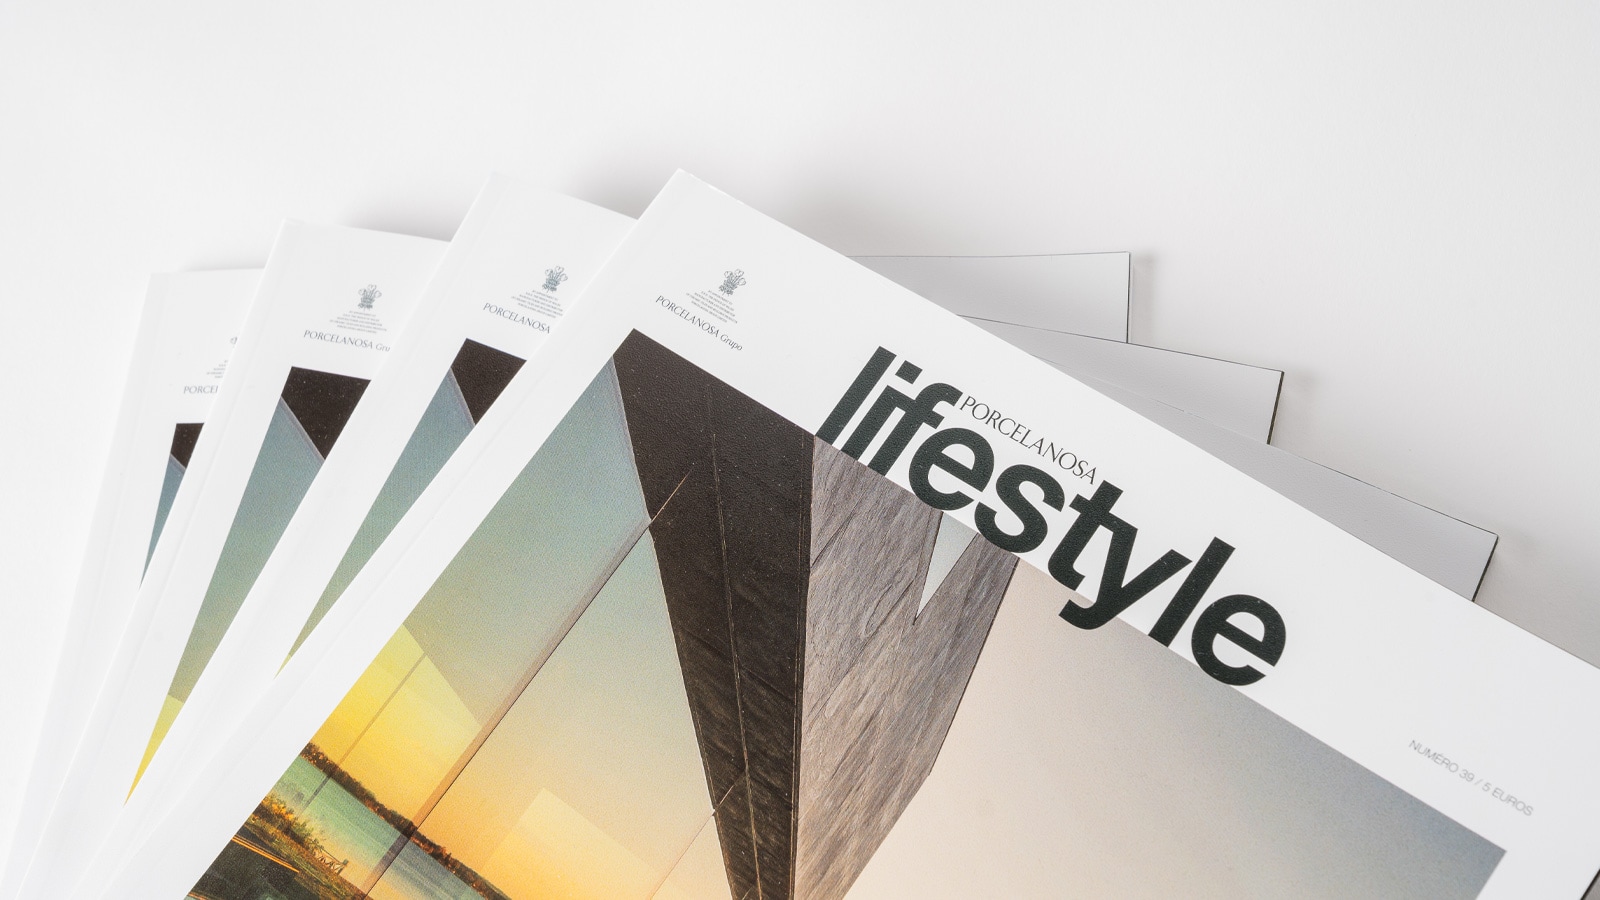 Le magazine Lifestyle présente dans ses pages les designs de Calatrava et de Lázaro Rosa-Violán.